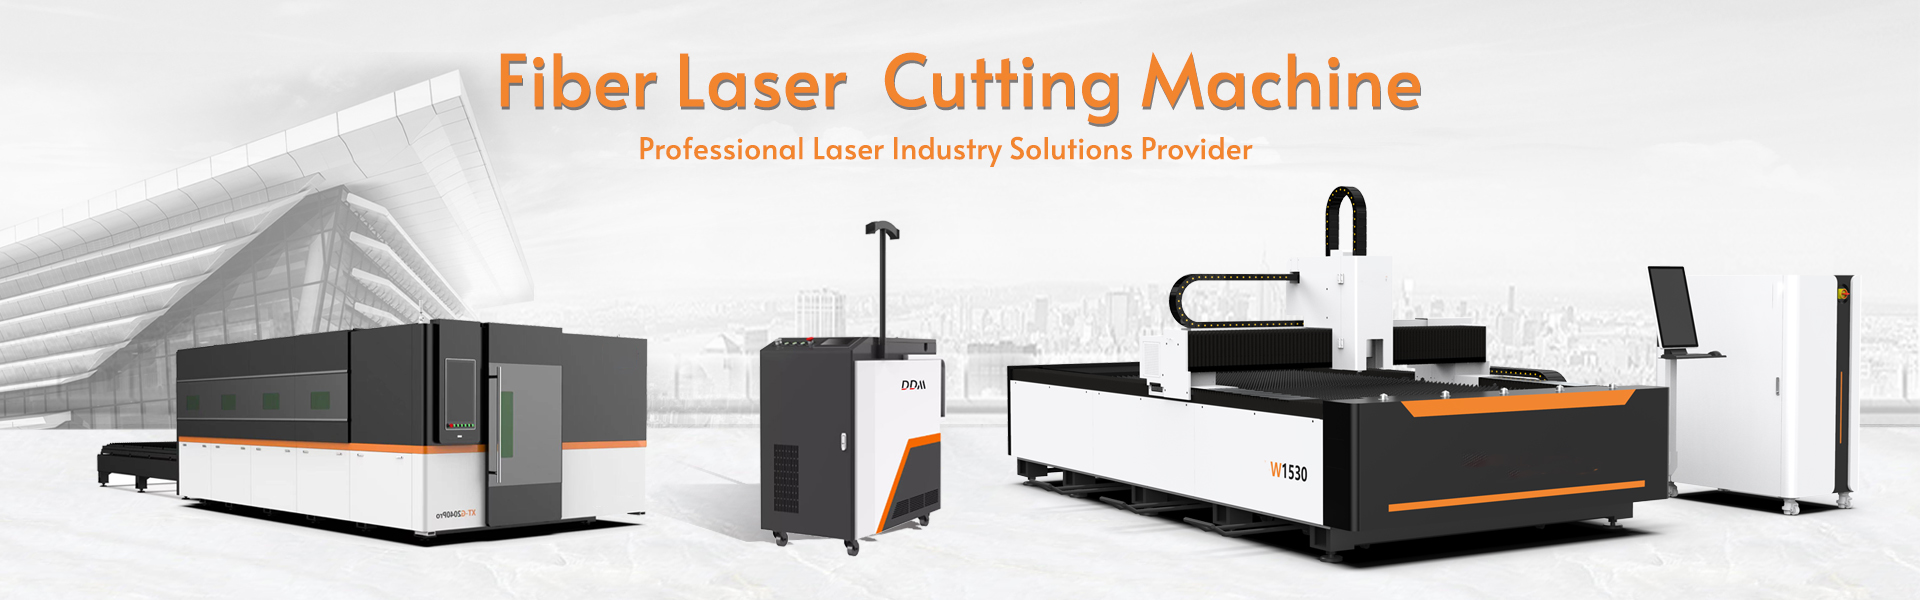 2. Fiber laser cutting machine